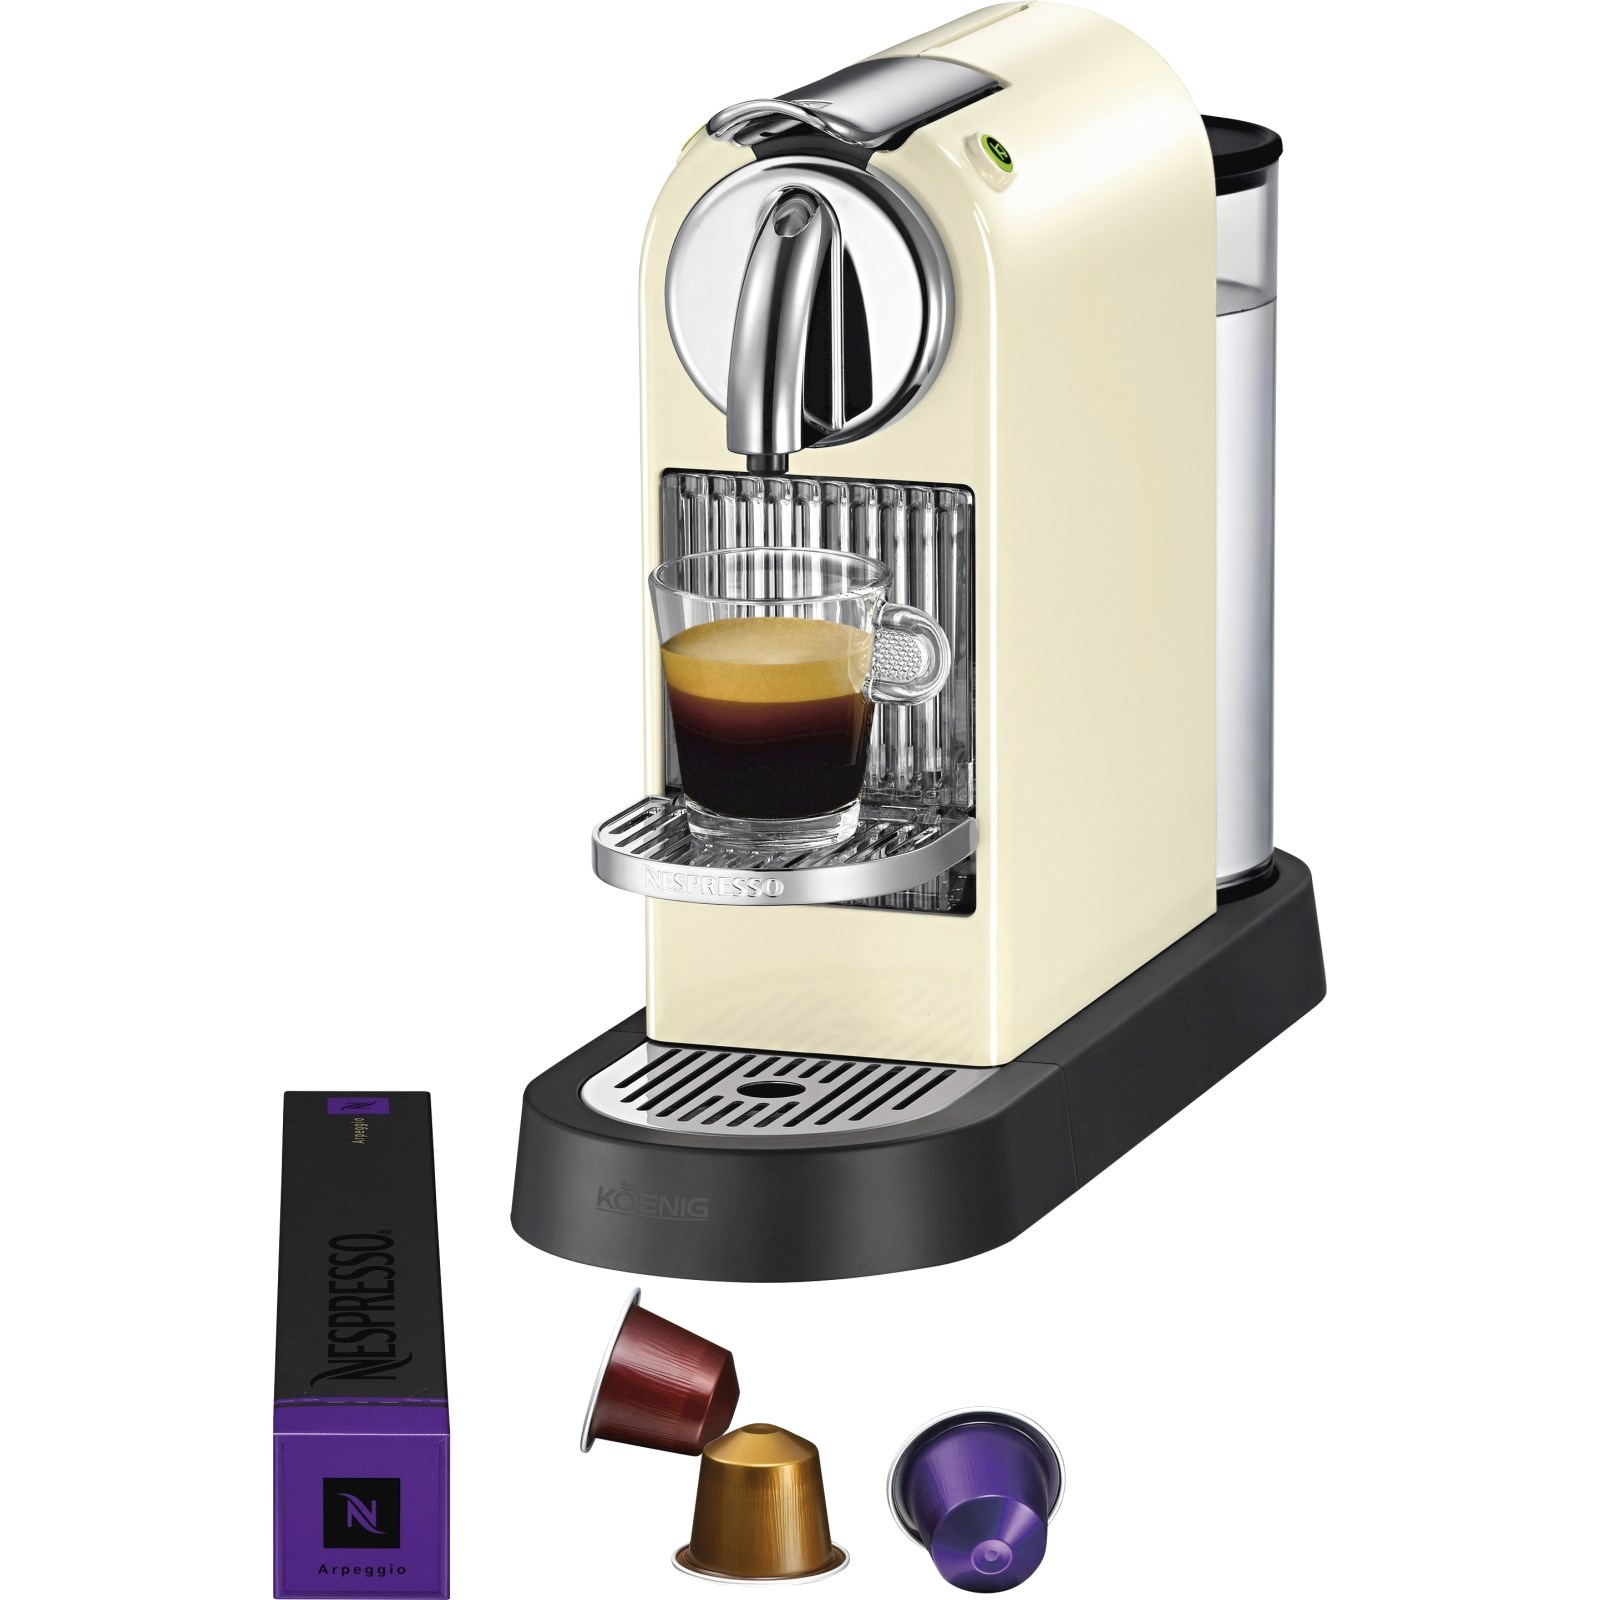 Nespresso weiss kaufen - Elektro- Küchengeräte - LANDI